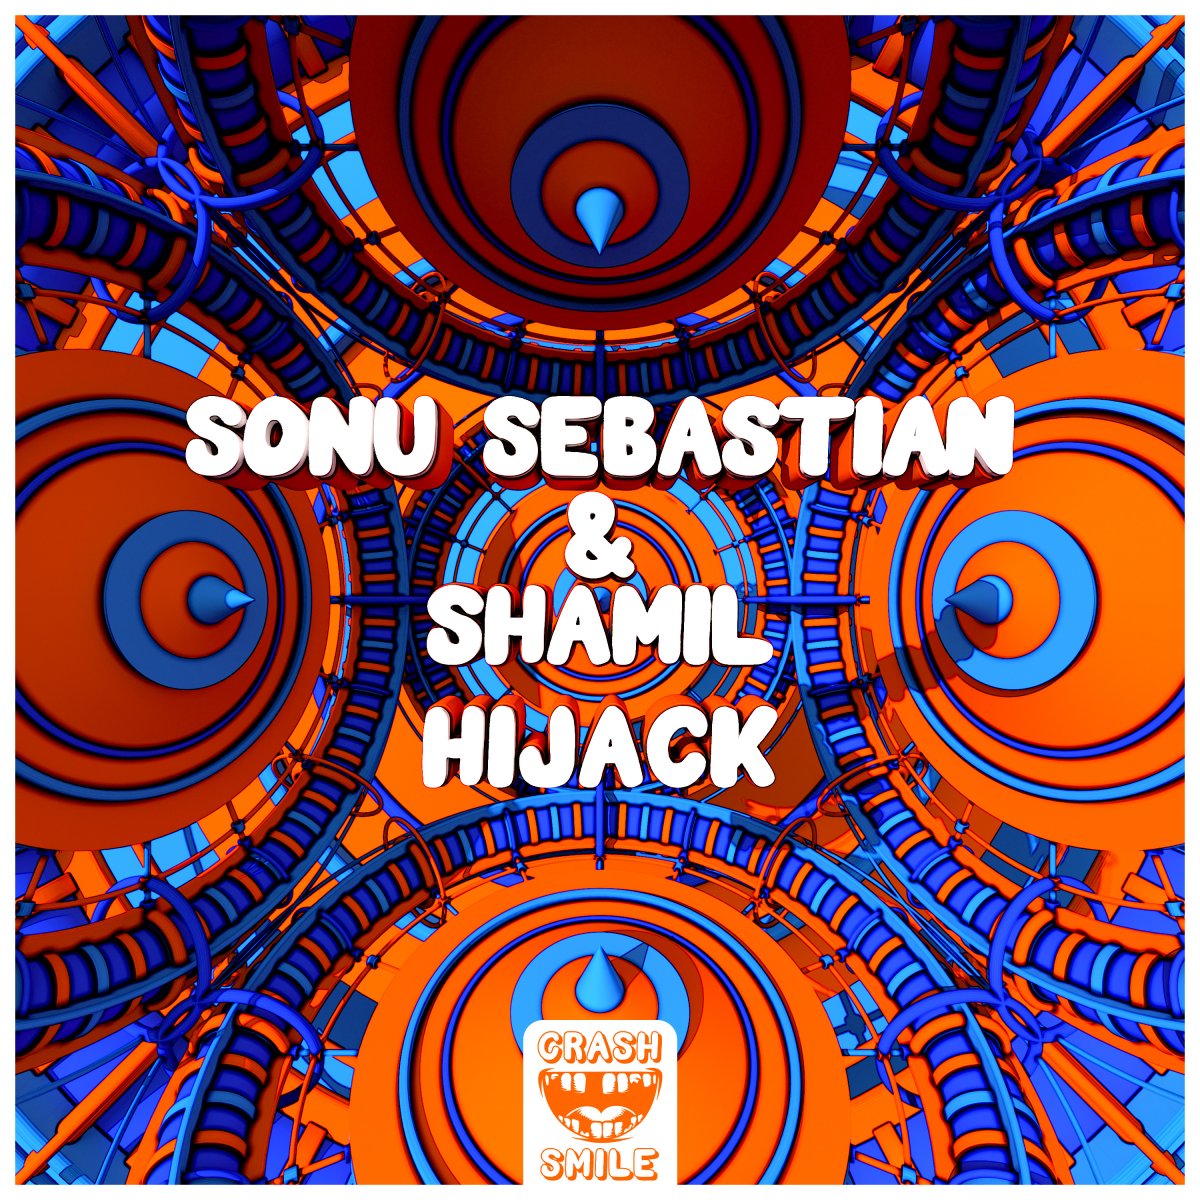 HIJACK - sonusebastian⁠ & Shamil⁠ 